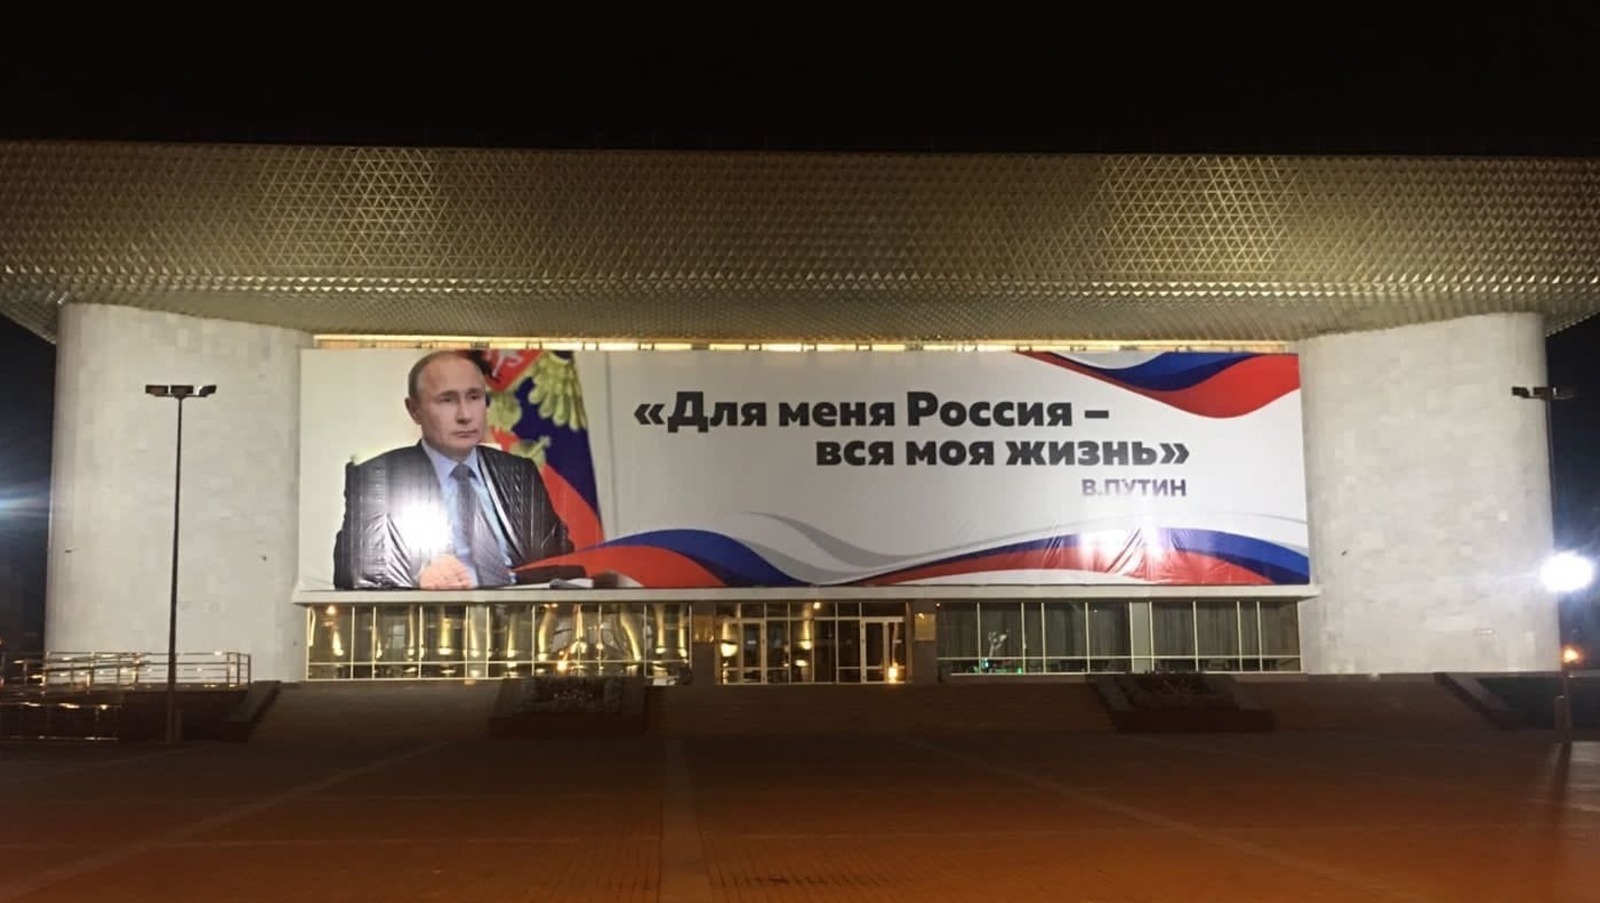 В столице Башкирии появился баннер к юбилею Владимира Путина